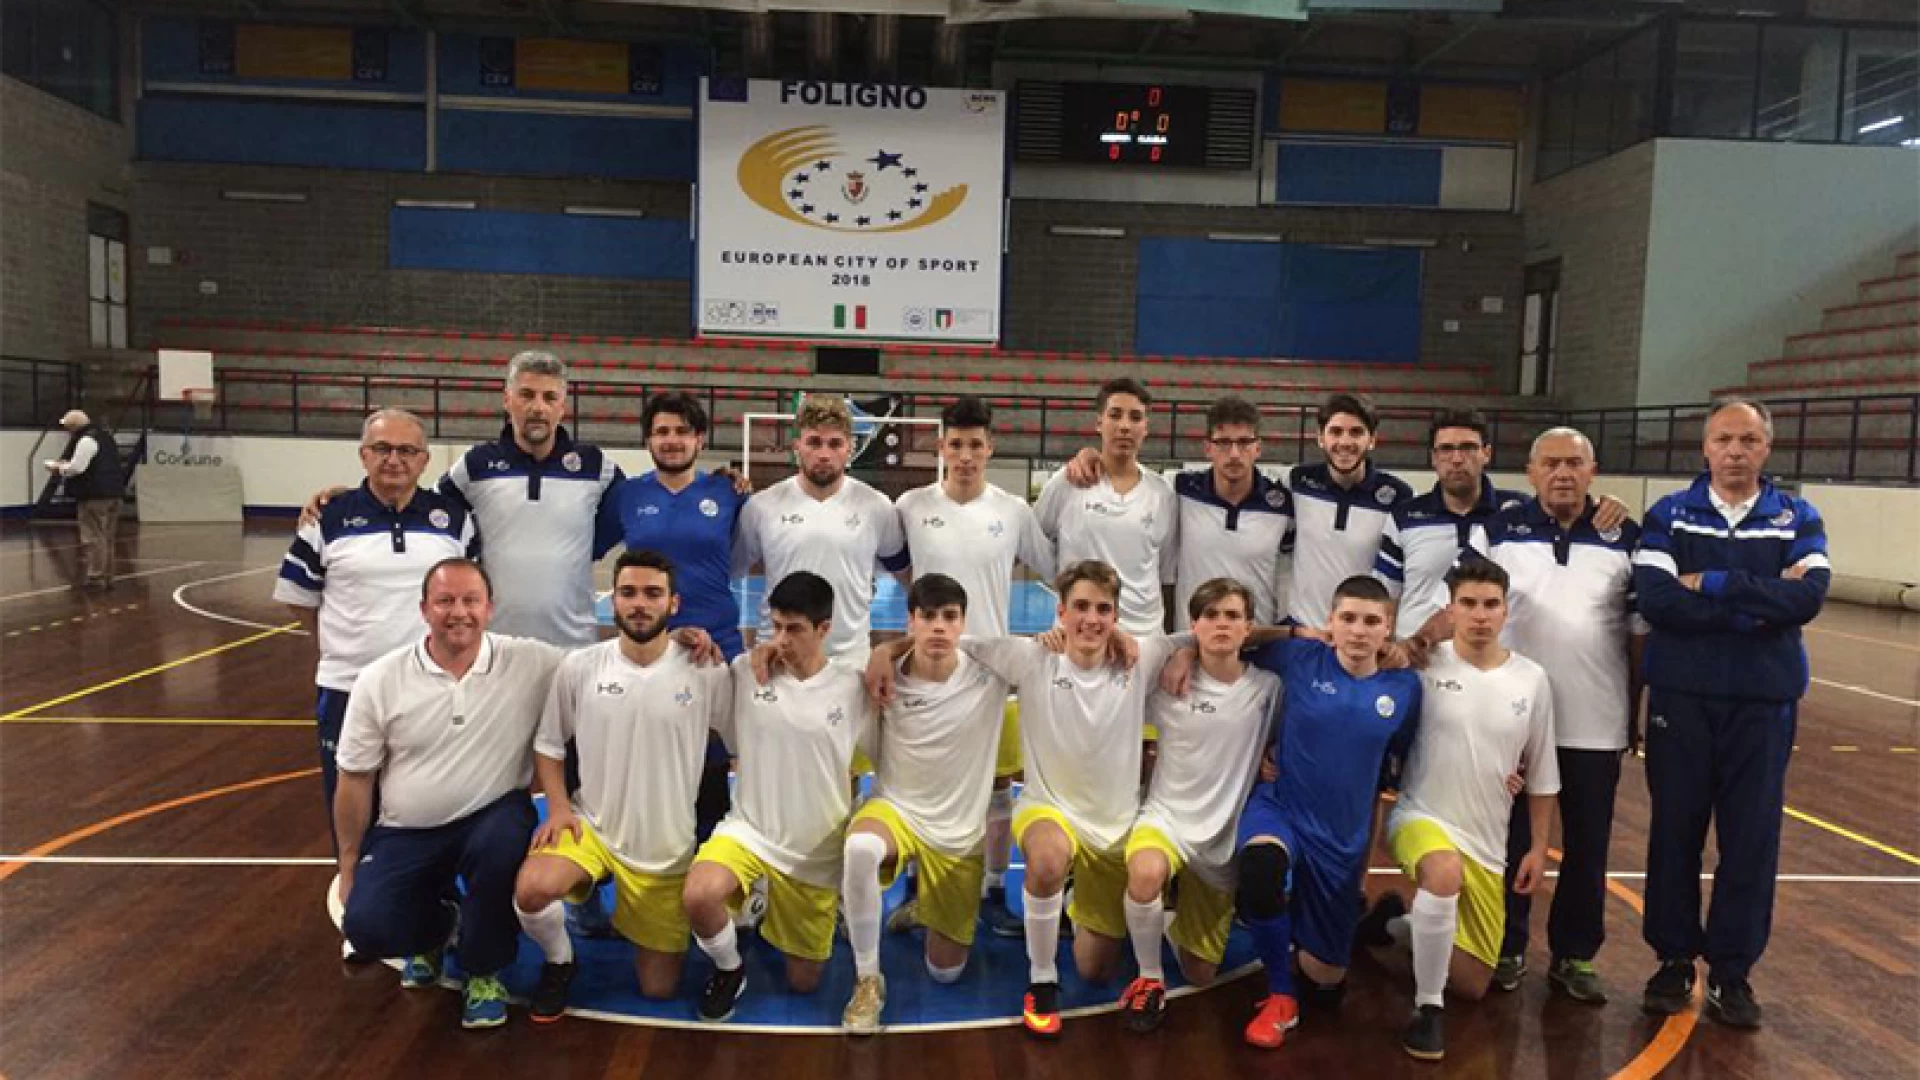 Calcio a 5: Torneo delle Regioni, il Molise fuori a testa alta nei quarti di finale contro la Calabria.